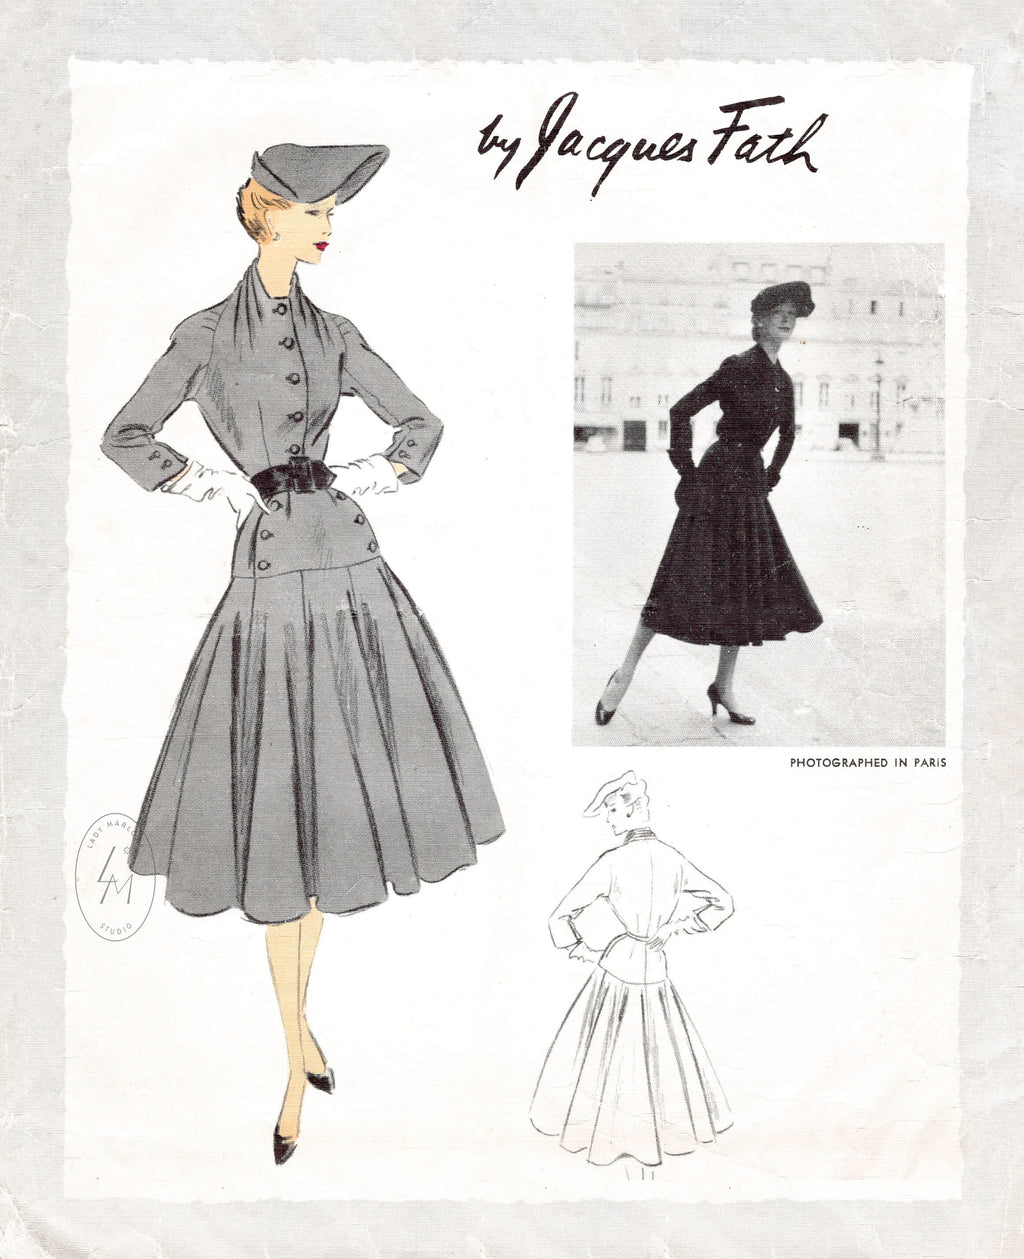 1950s tailored dress vintage sewing pattern repro Jacques Fath Vogue Paris Original 1157